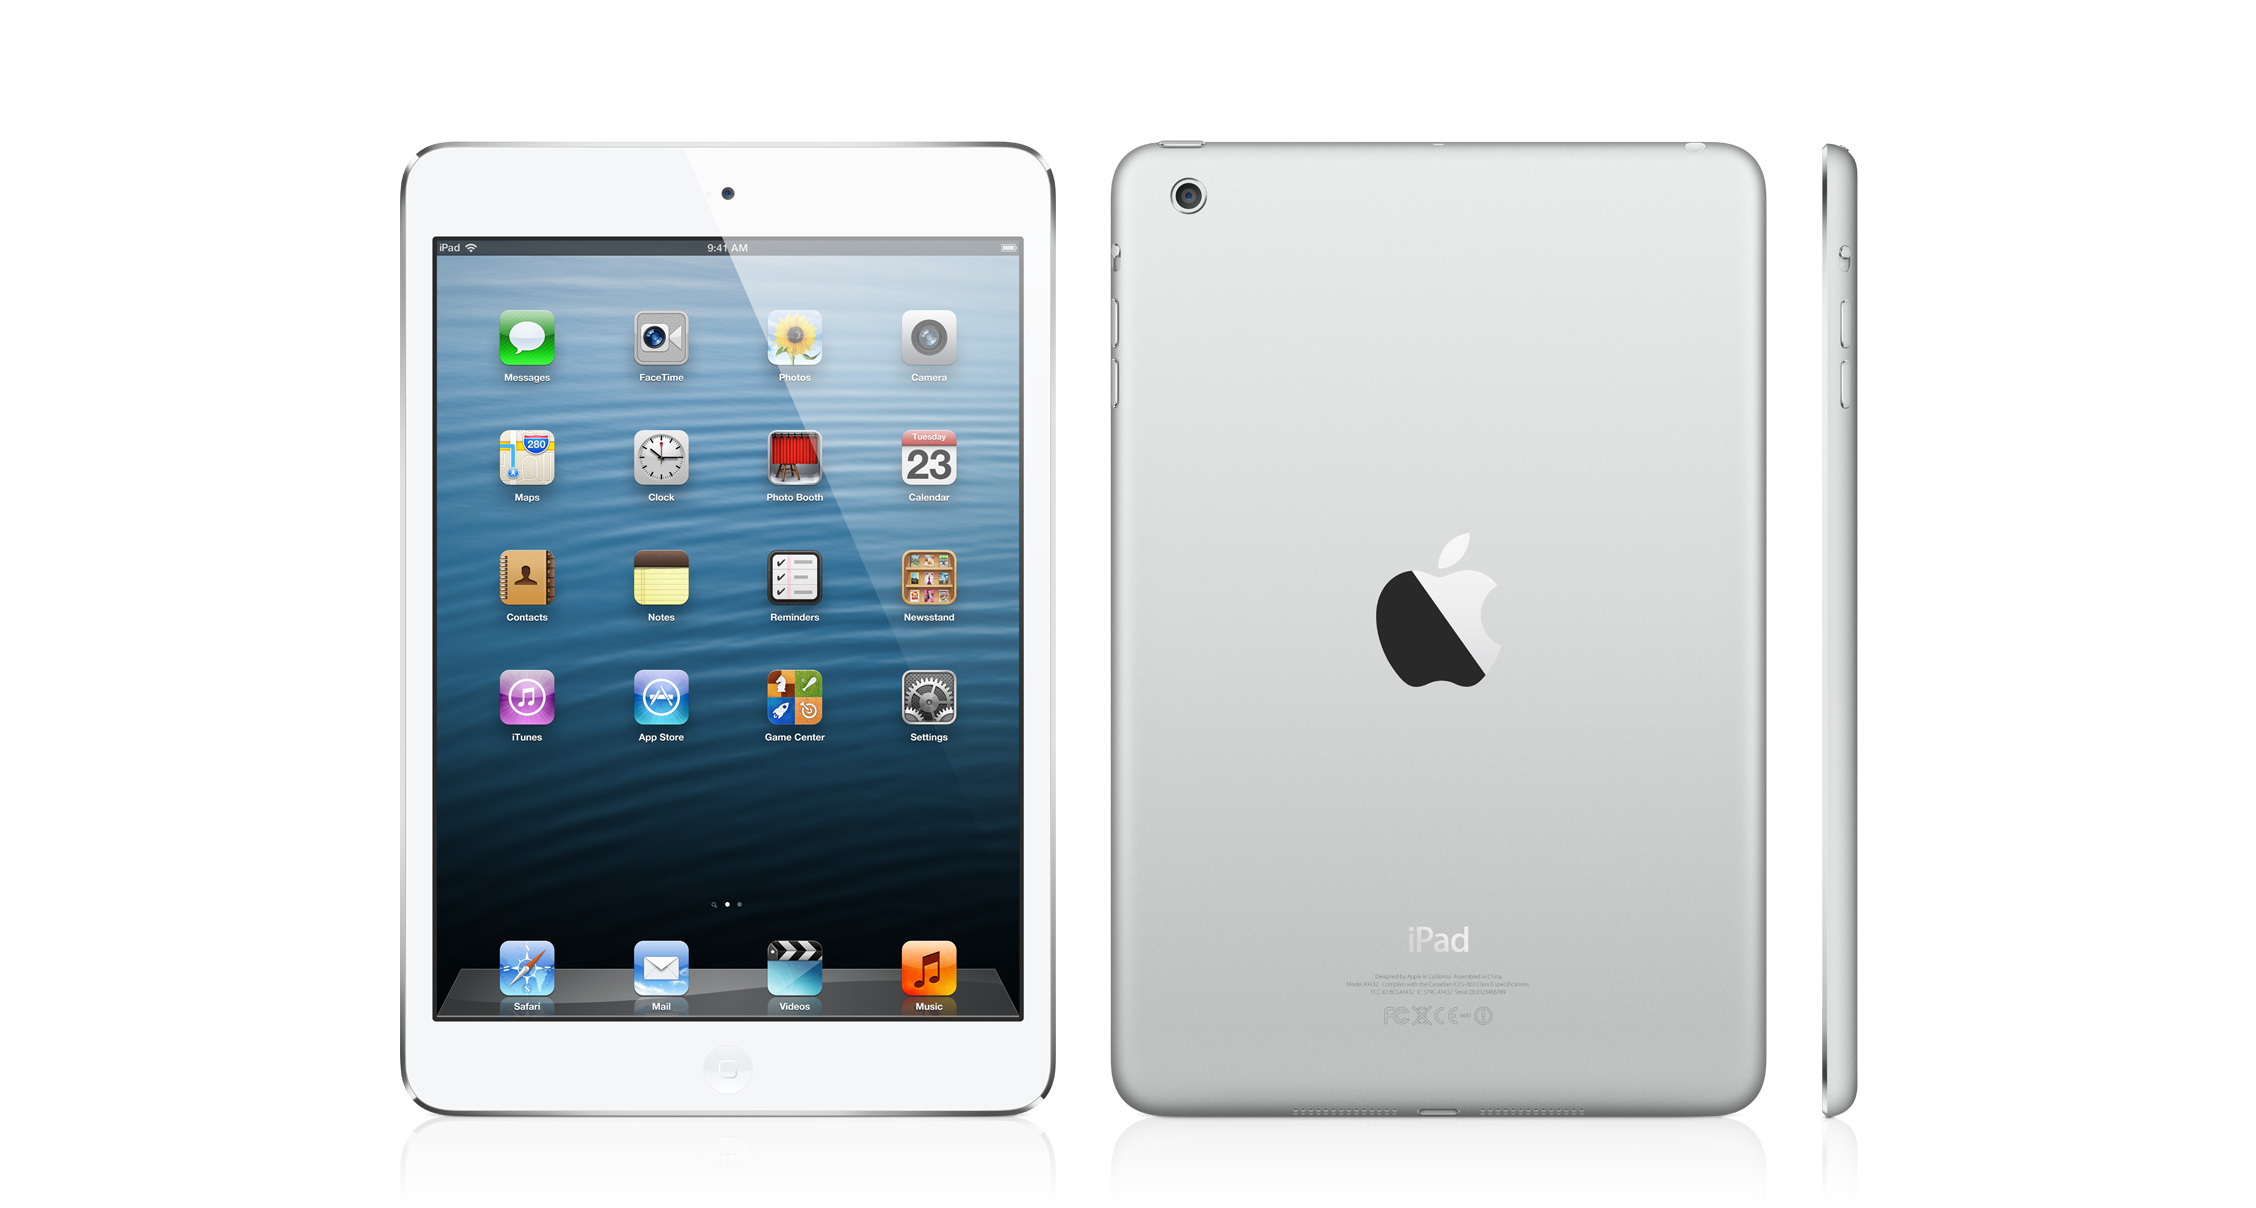 Máy tính bảng iPad mini 4 Retina + Cellular - Hàng cũ - 16GB, Wifi + 3G/4G, 7.9 inch